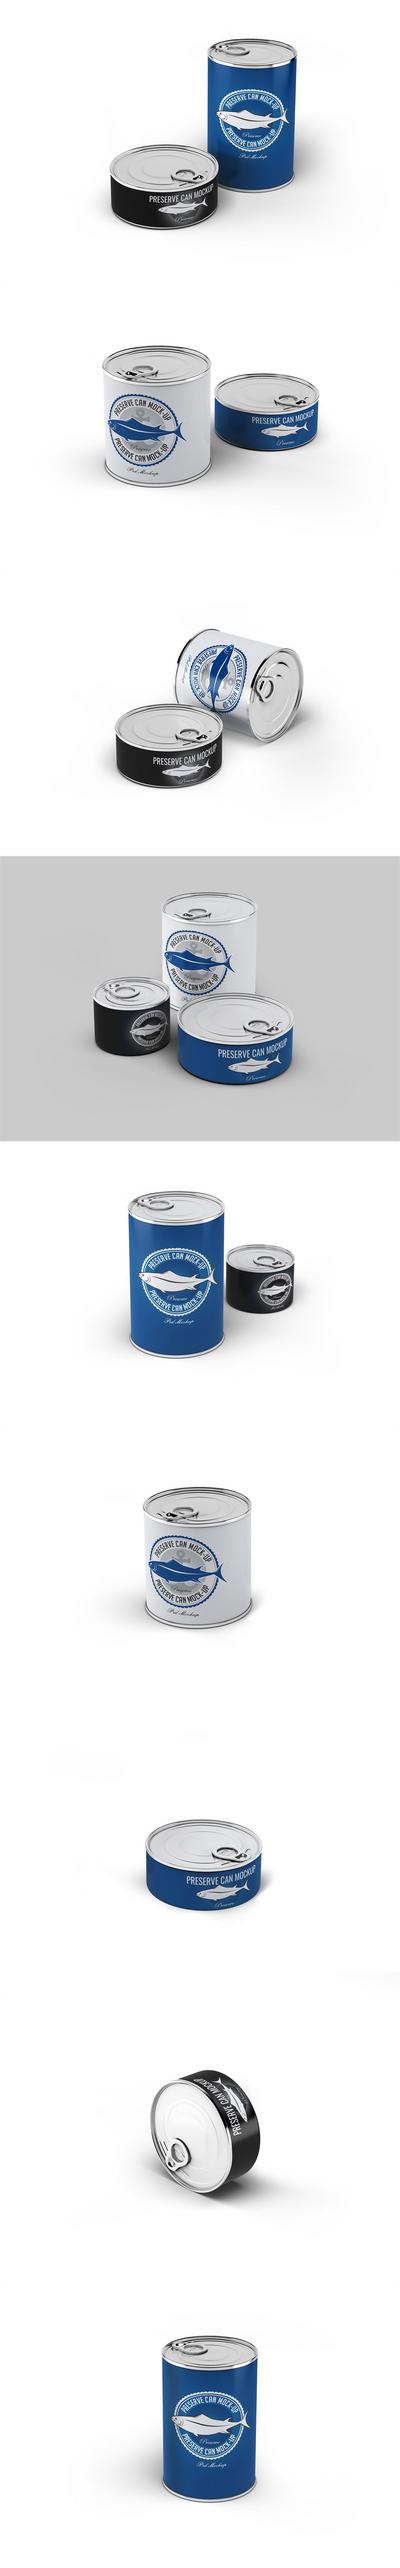 南门网 品牌 VI 样机 饮料 罐头 易拉罐 效果图 PS 啤酒 碳酸饮料 食品